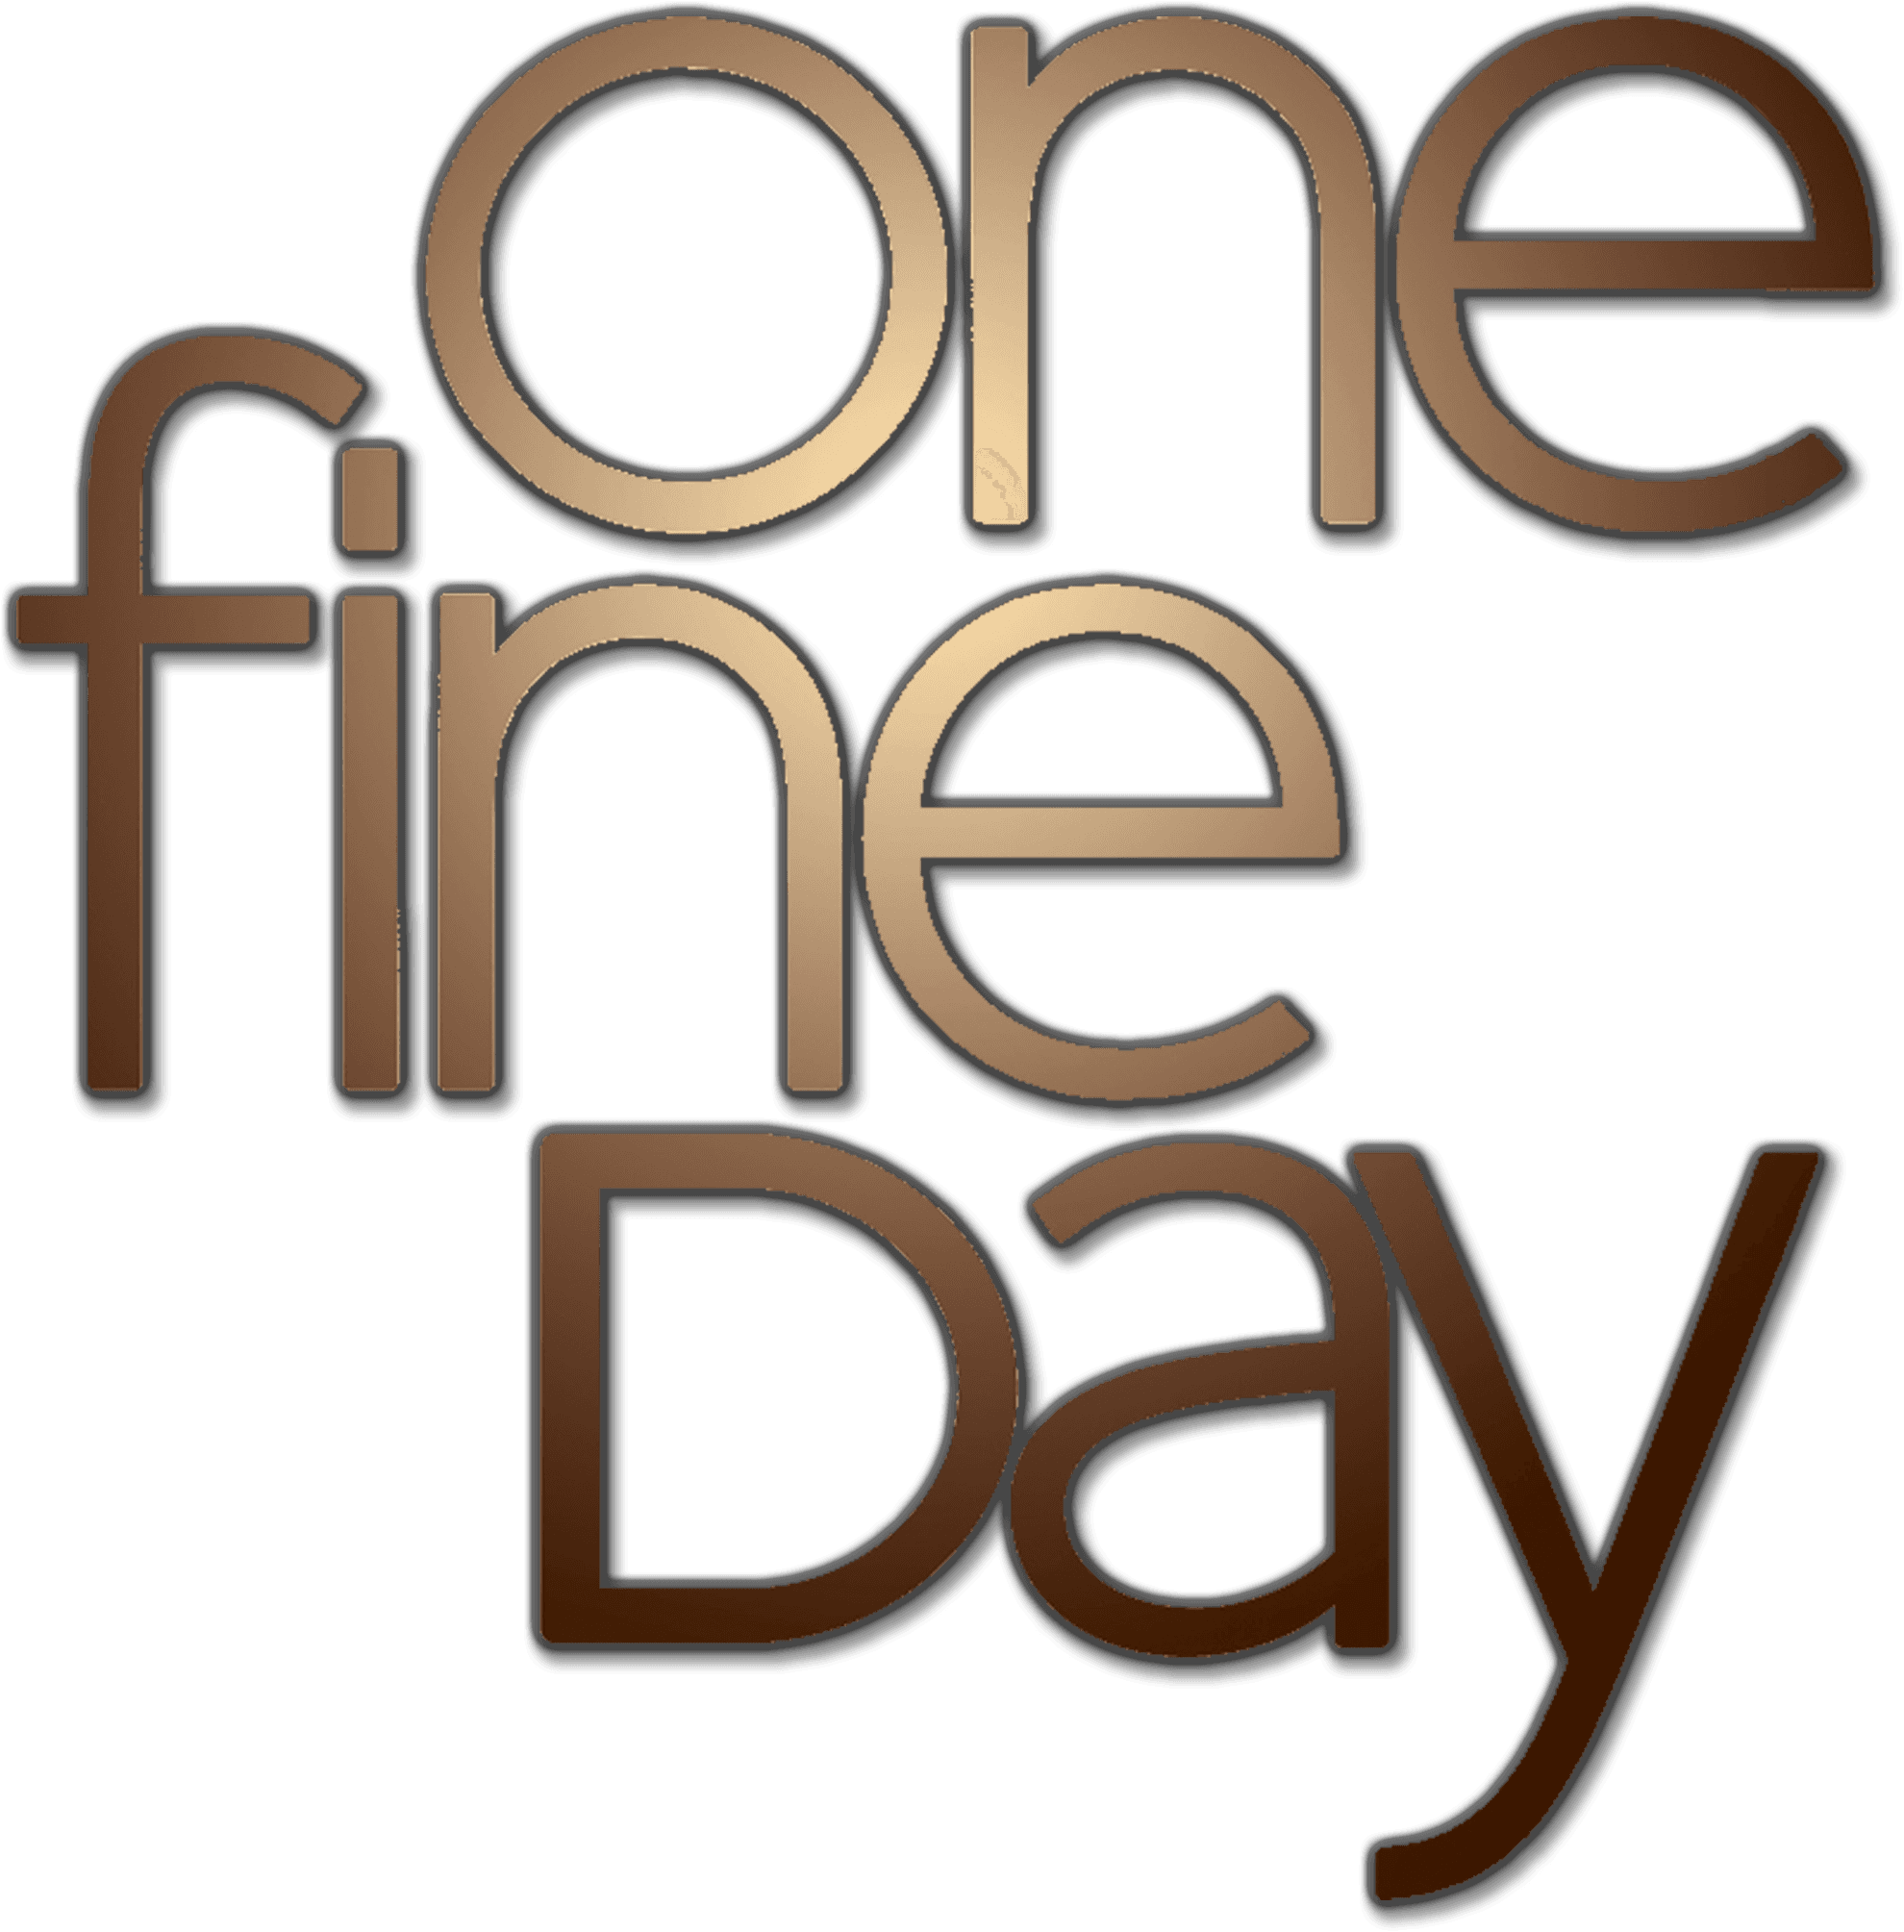 One Fine Day logo